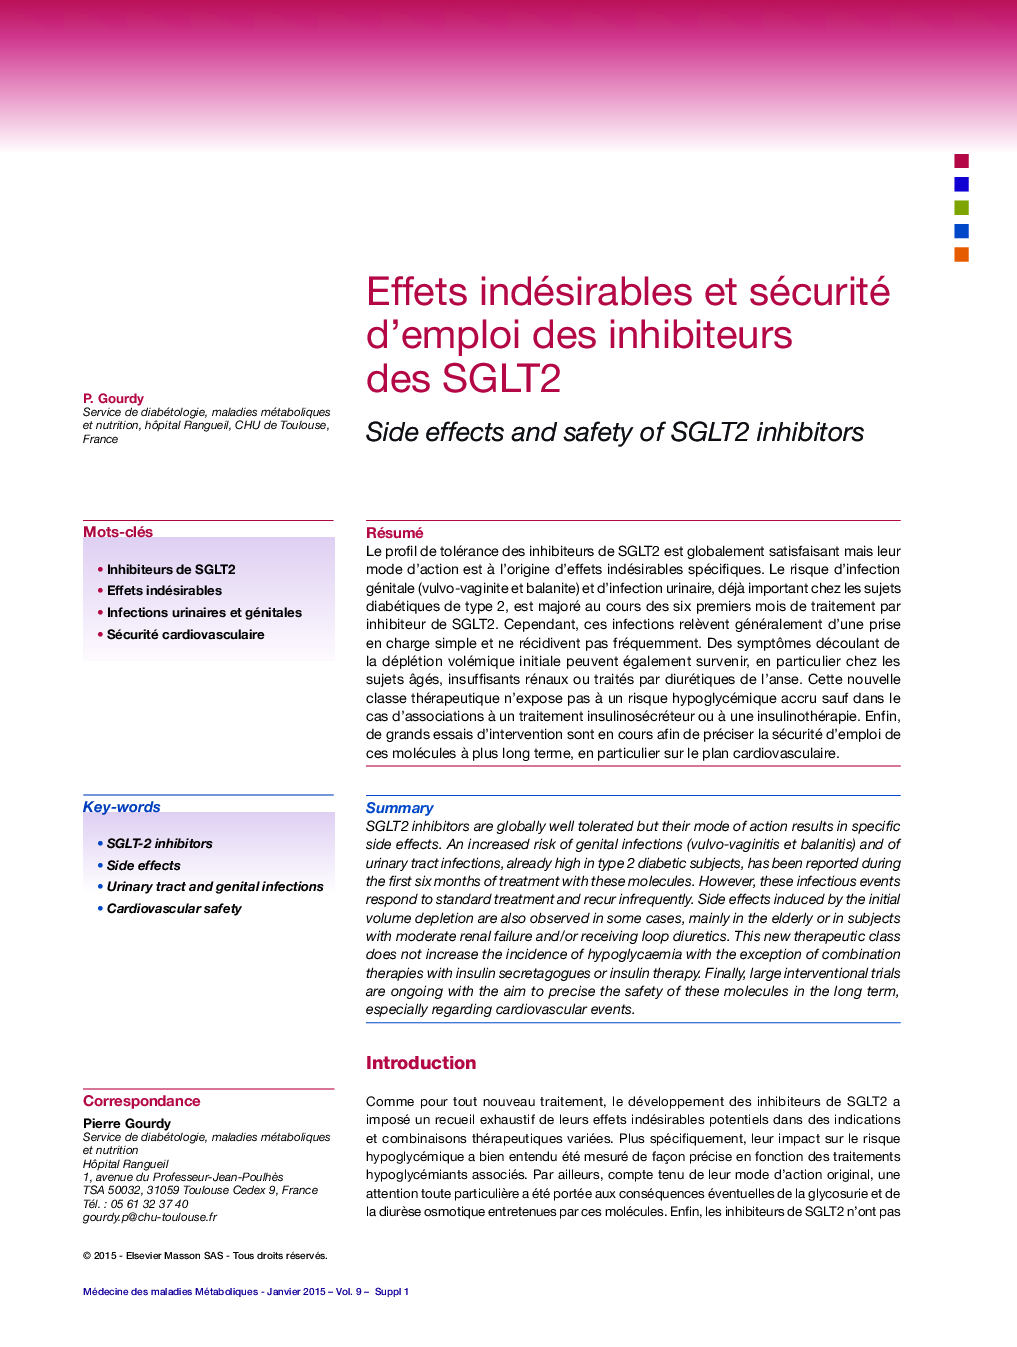 Effets indésirables et sécurité d'emploi des inhibiteurs des SGLT2